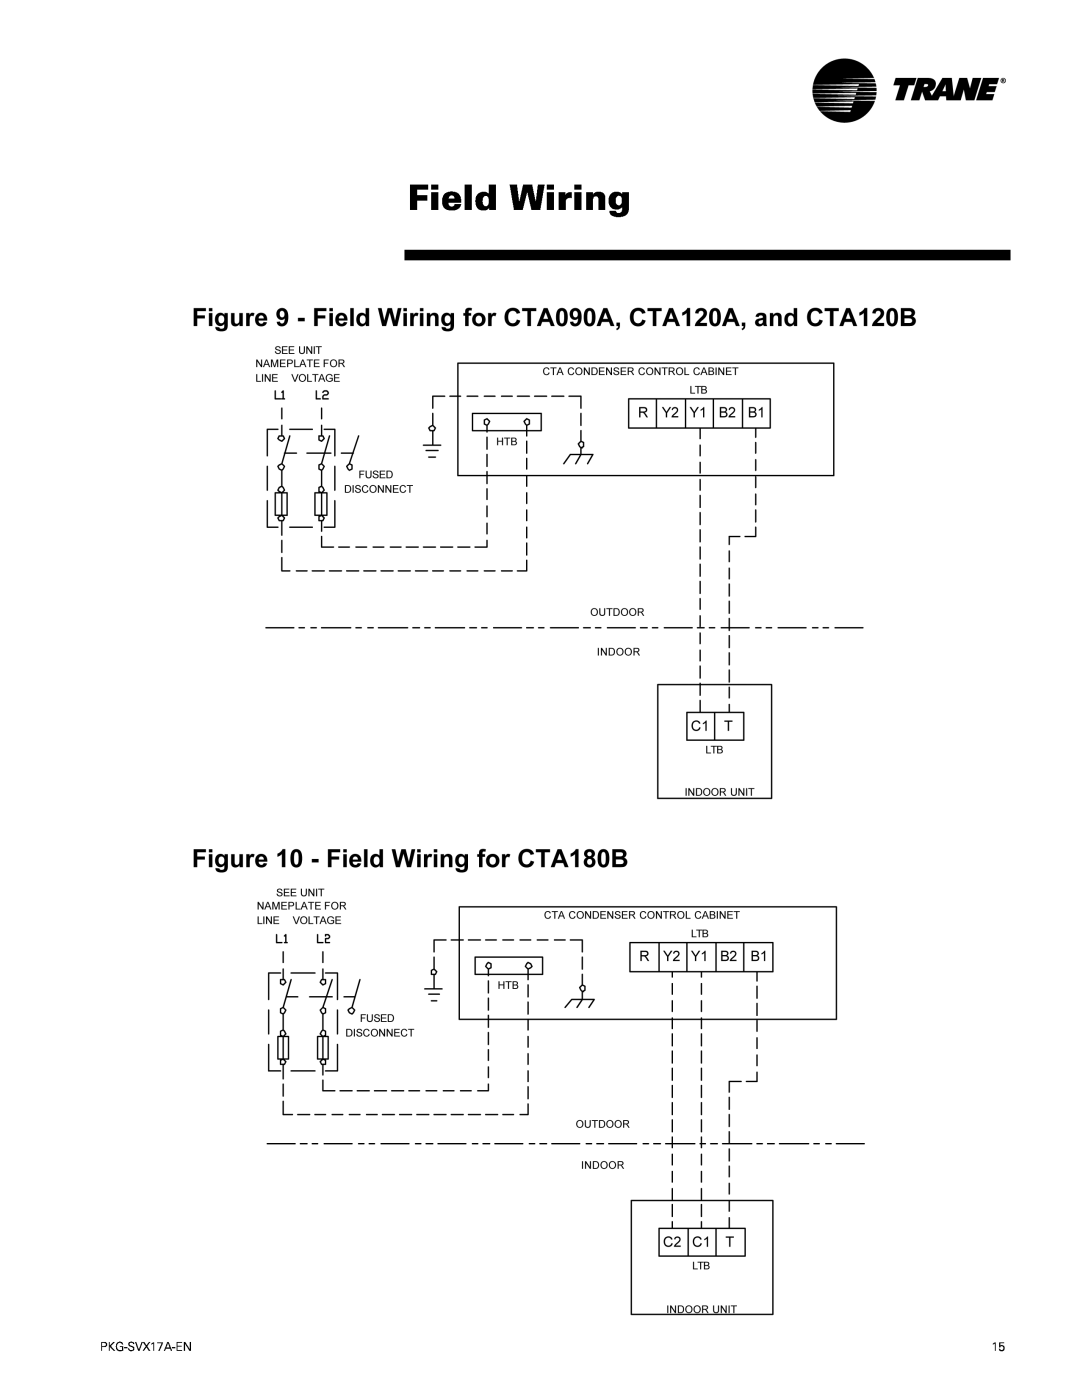 Trane PKG-SVX17A-EN manual Field Wiring 